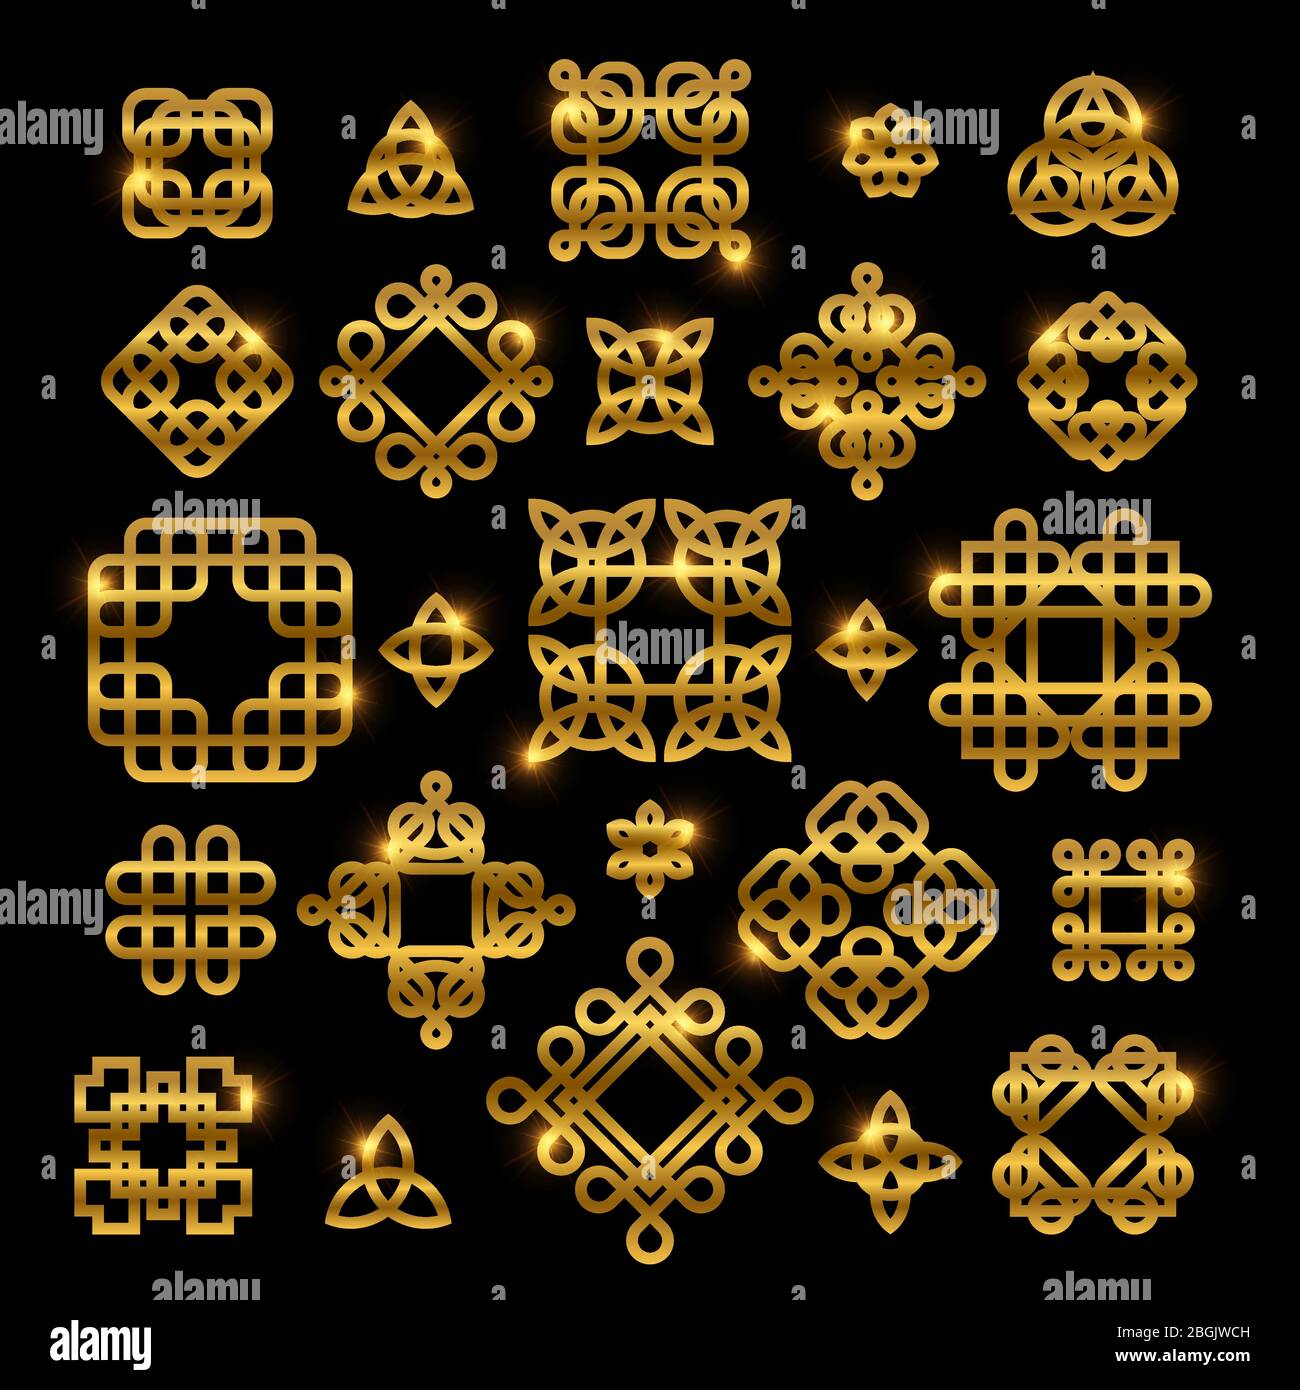 Nœuds celtiques dorés avec éléments brillants isolés sur fond noir. Collection d'icônes de nœuds vectoriels ornement pour le motif de tatouage, illustration de la décoration gaélique Illustration de Vecteur